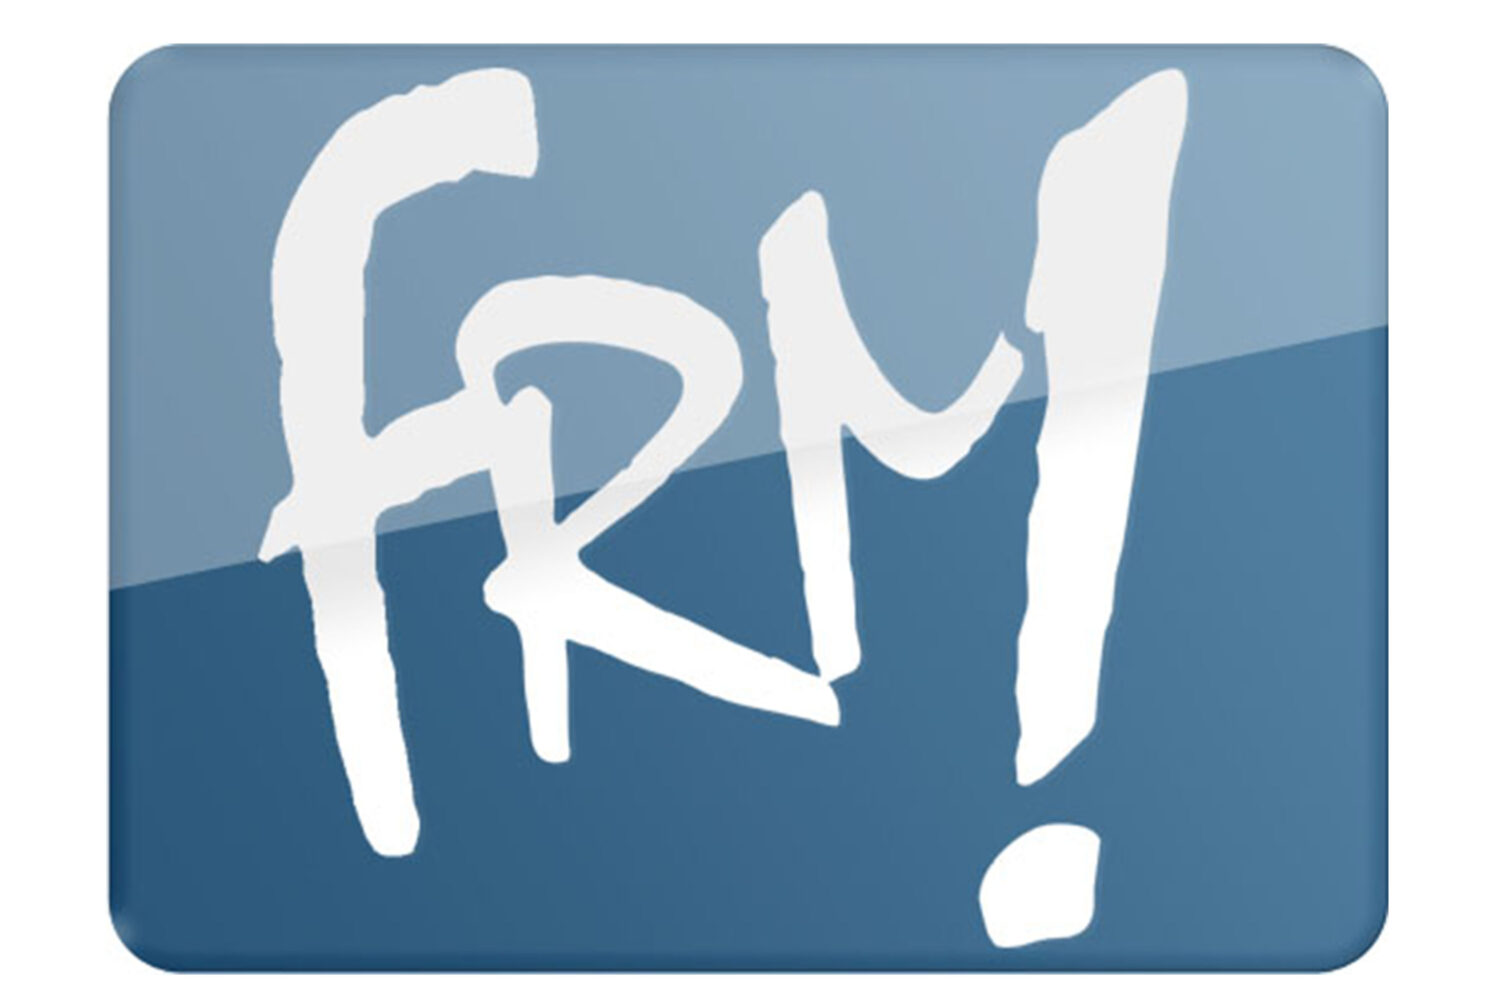 FRM - Regionalfernsehen